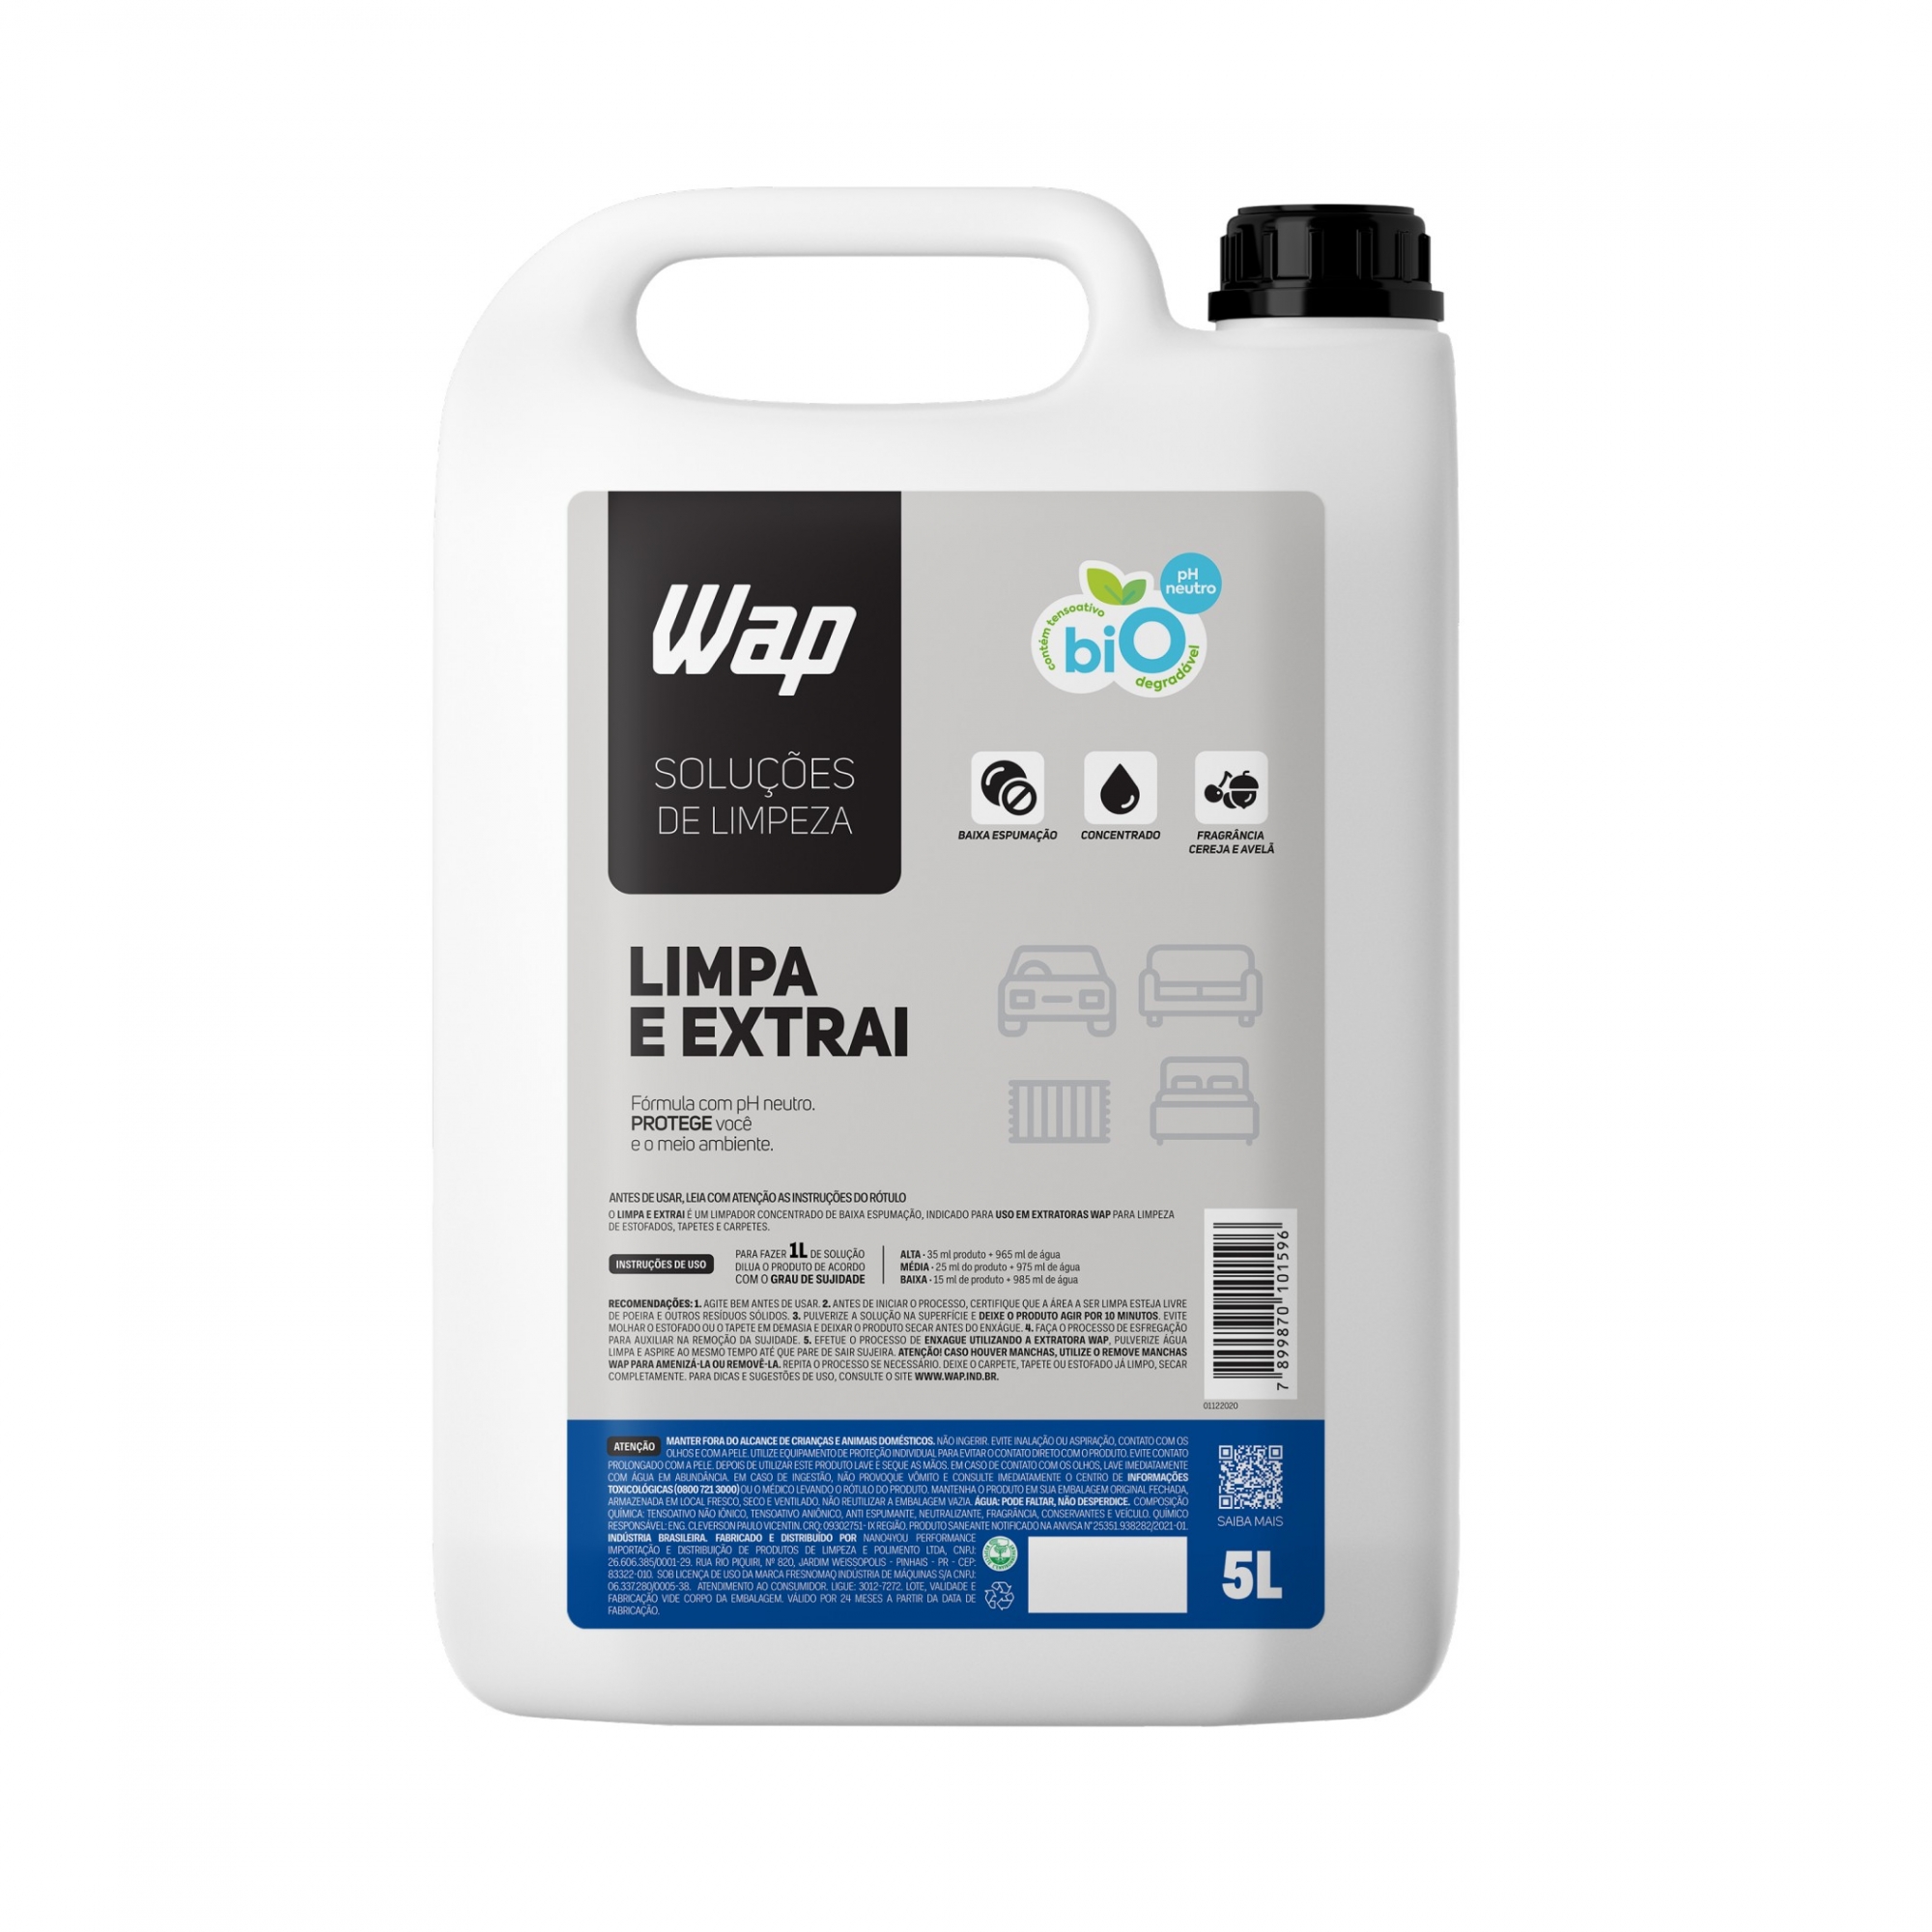 Limpa e Extrai 5L - Solução de Limpeza Wap